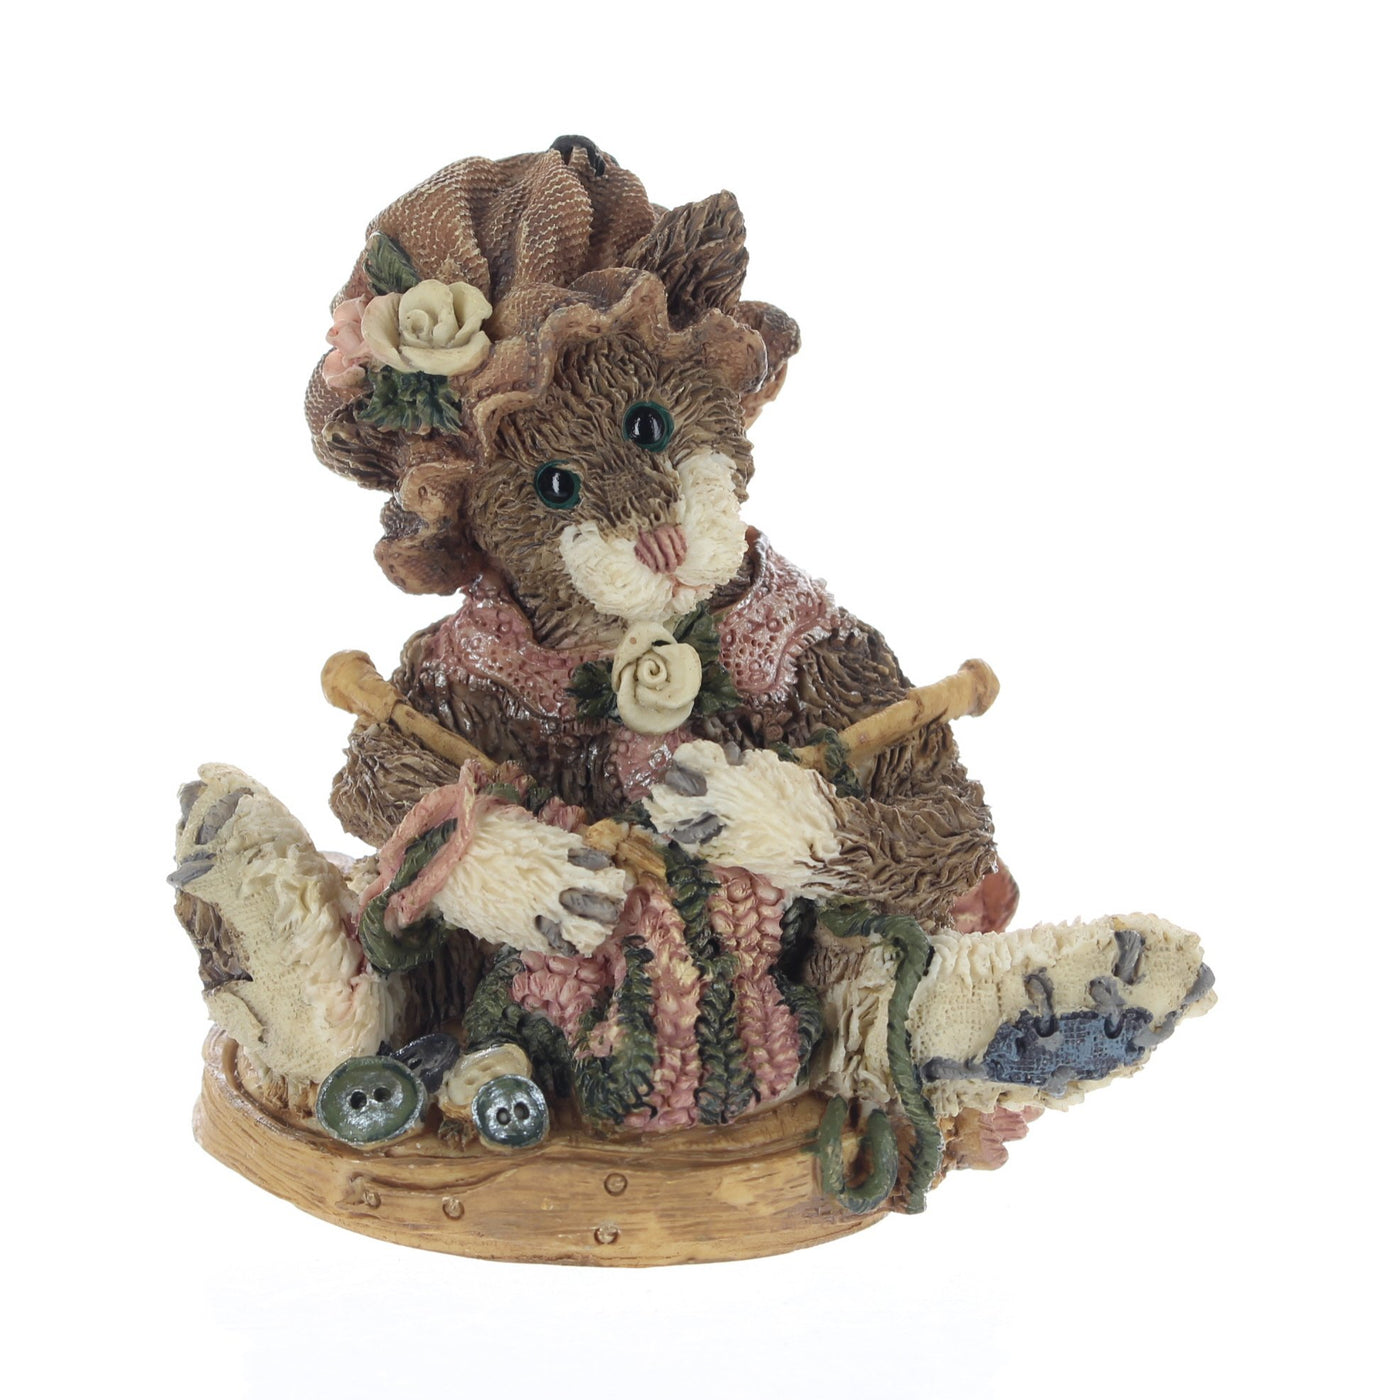 Boyds-Bears-Friends-Bearstone-Figurine-Cookie-Catbert.Knittin-Kitten-CB9403A_01